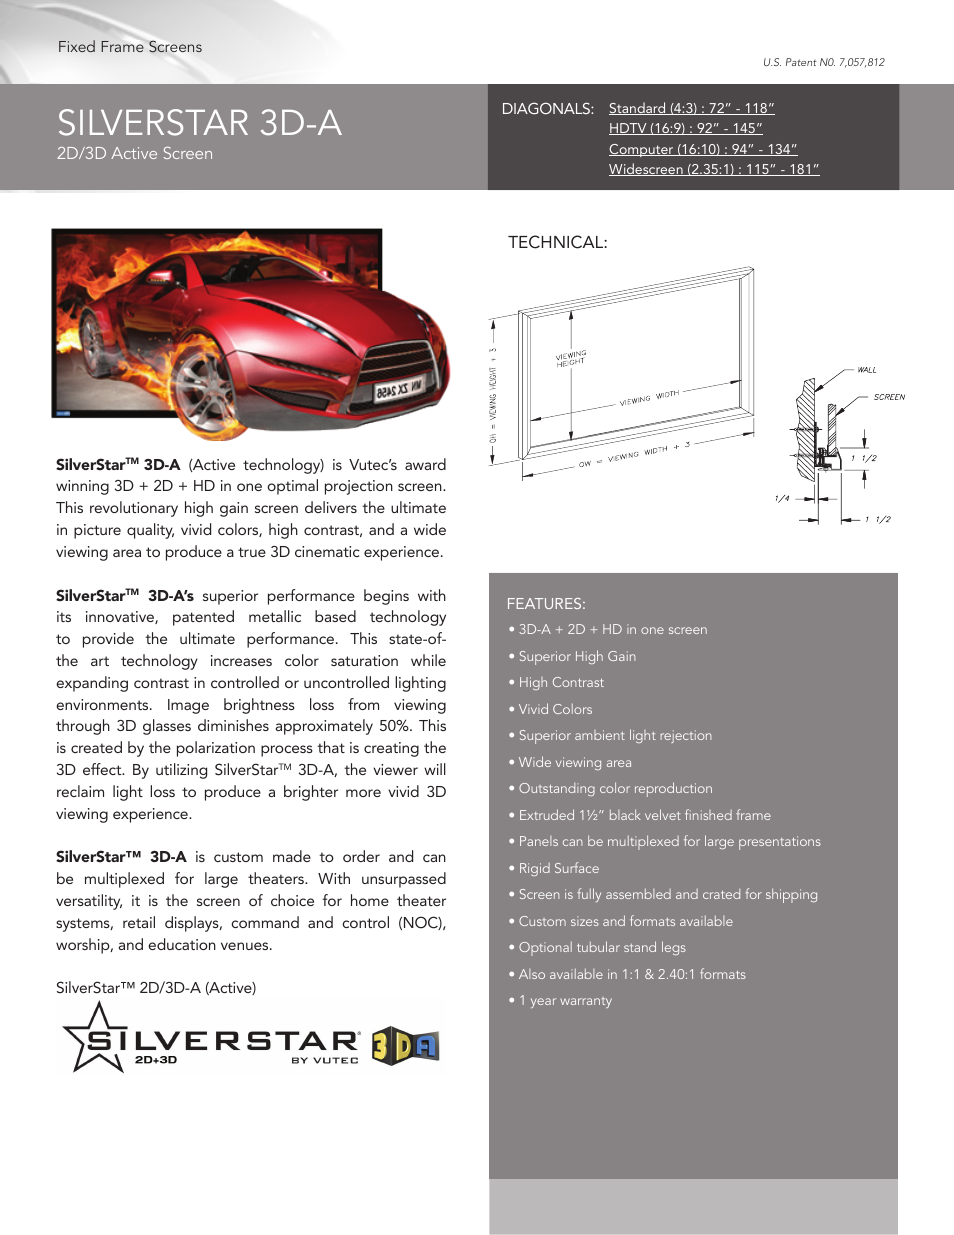 SILVERSTAR 3D-A - Product Sheet